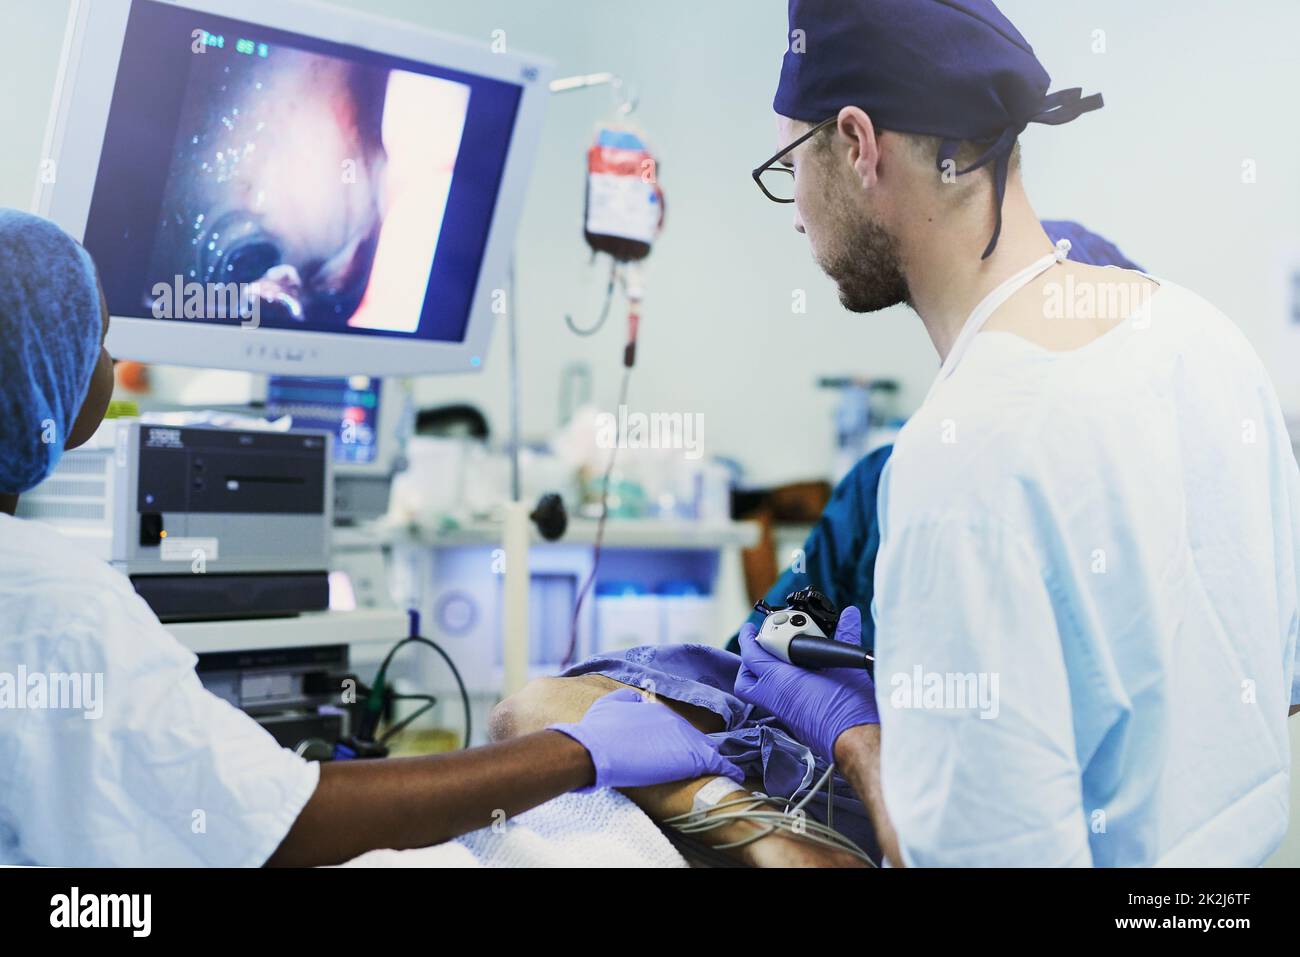 Esecuzione di un delicato intervento chirurgico guidato da immagini. Immagine di un'immagine visualizzata su un monitor durante una procedura medica. Foto Stock